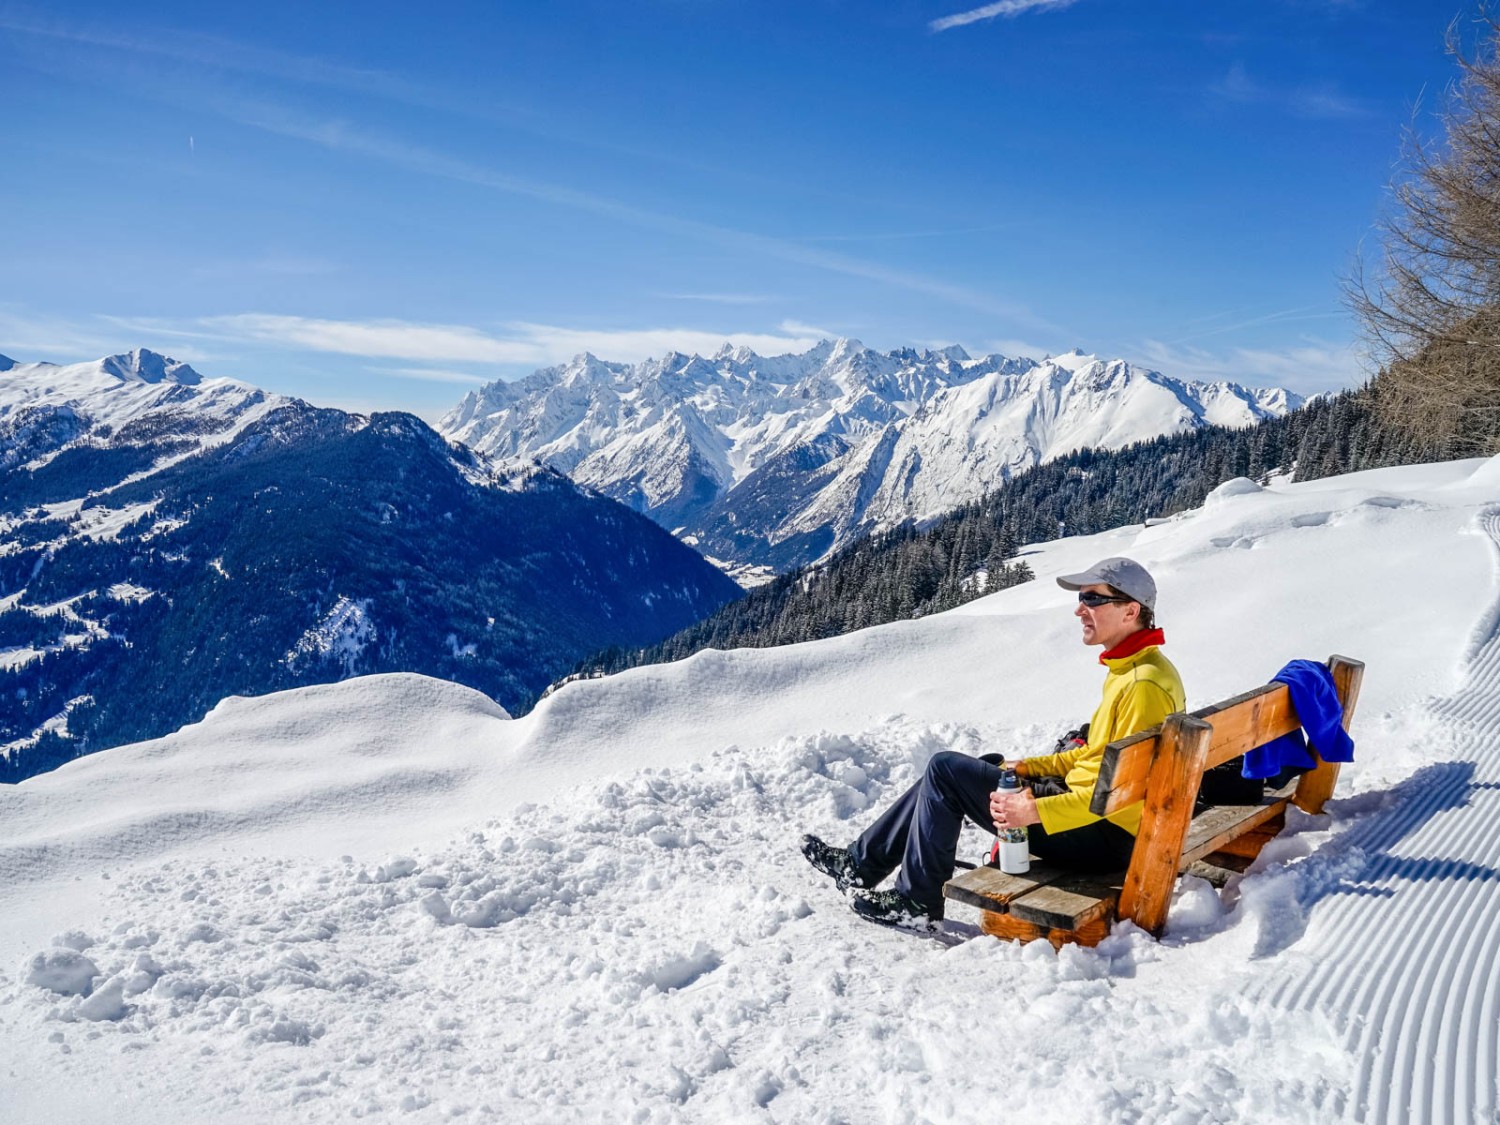 Eine Aussichtsbank am Weg ist nie zu verachten. Am Horizont beginnt das Mont-Blanc-Massiv.